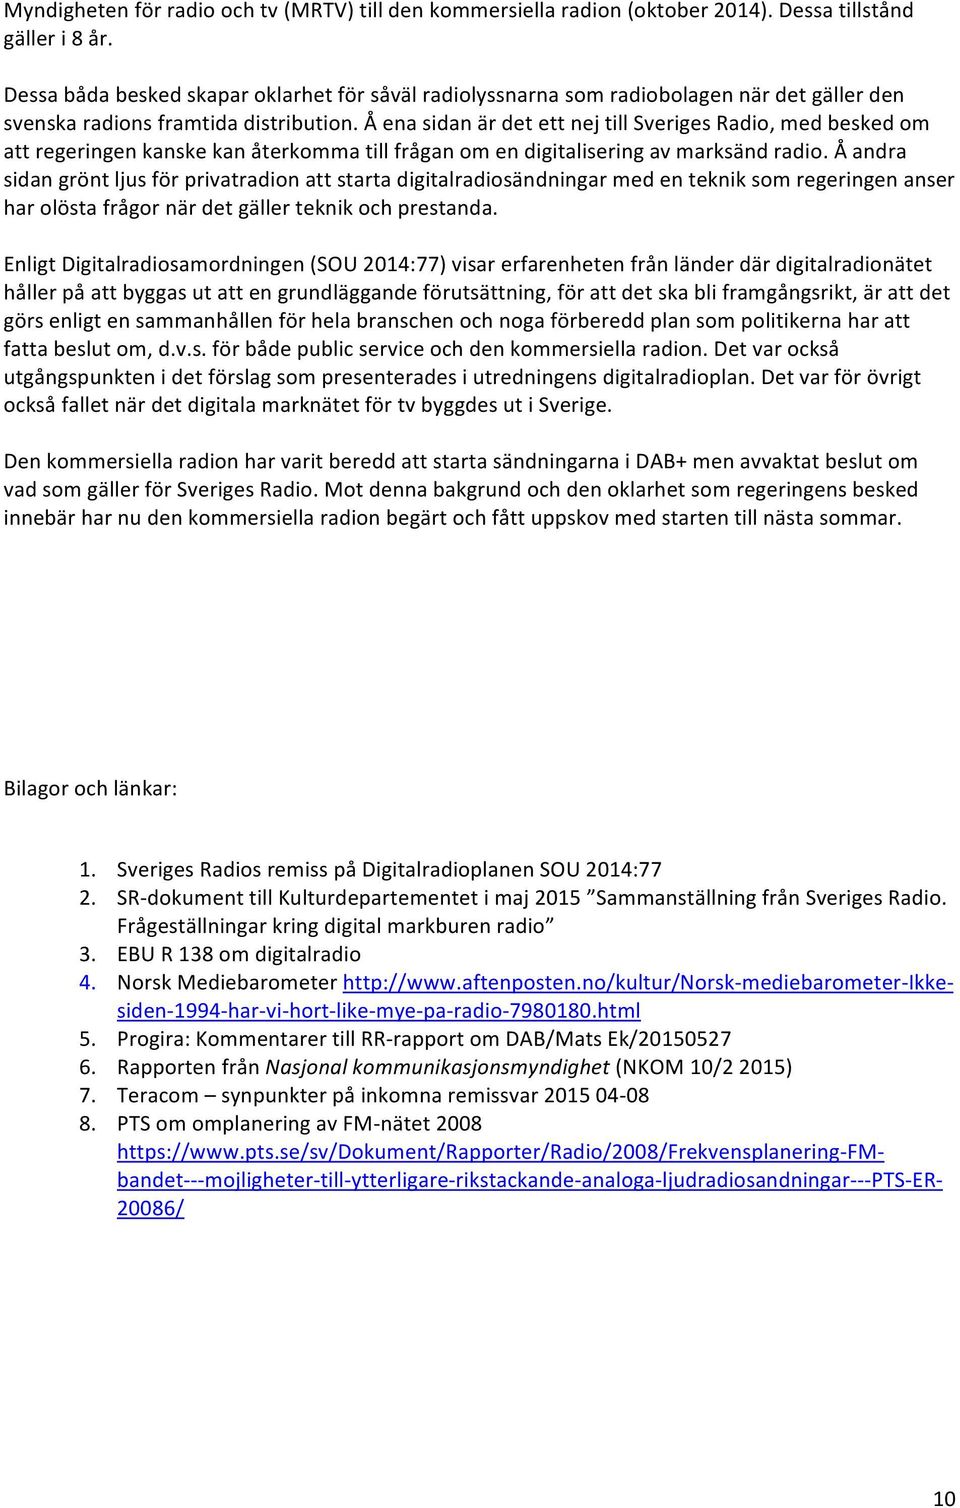 Å ena sidan är det ett nej till Sveriges Radio, med besked om att regeringen kanske kan återkomma till frågan om en digitalisering av marksänd radio.